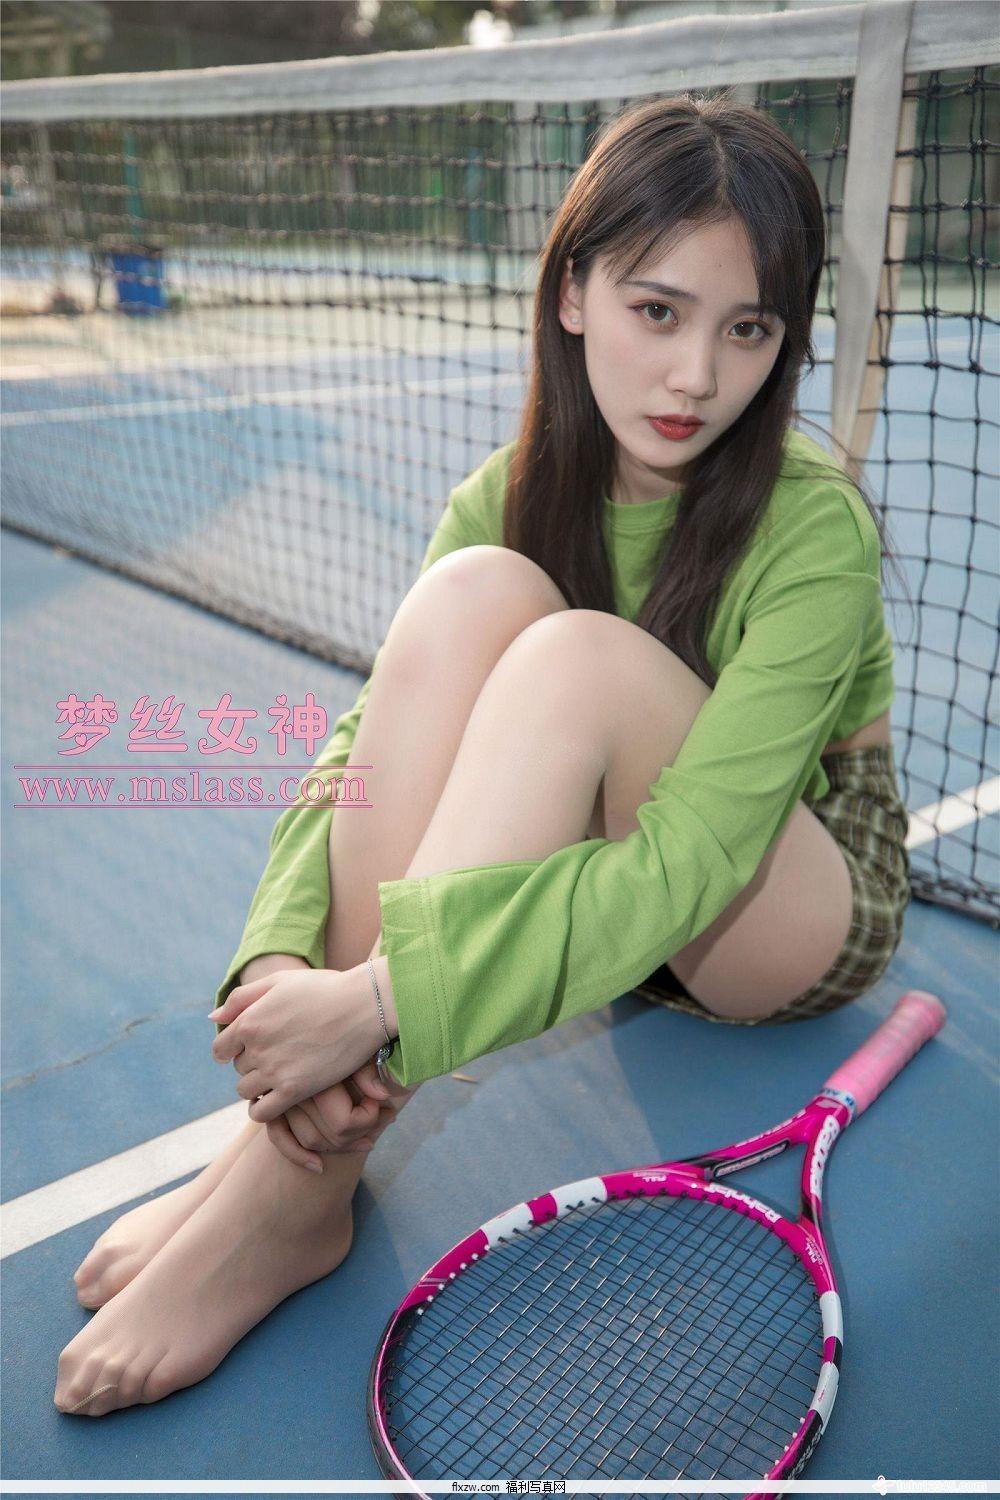 梦丝女神MSLASS - 香萱 网球少女(52)